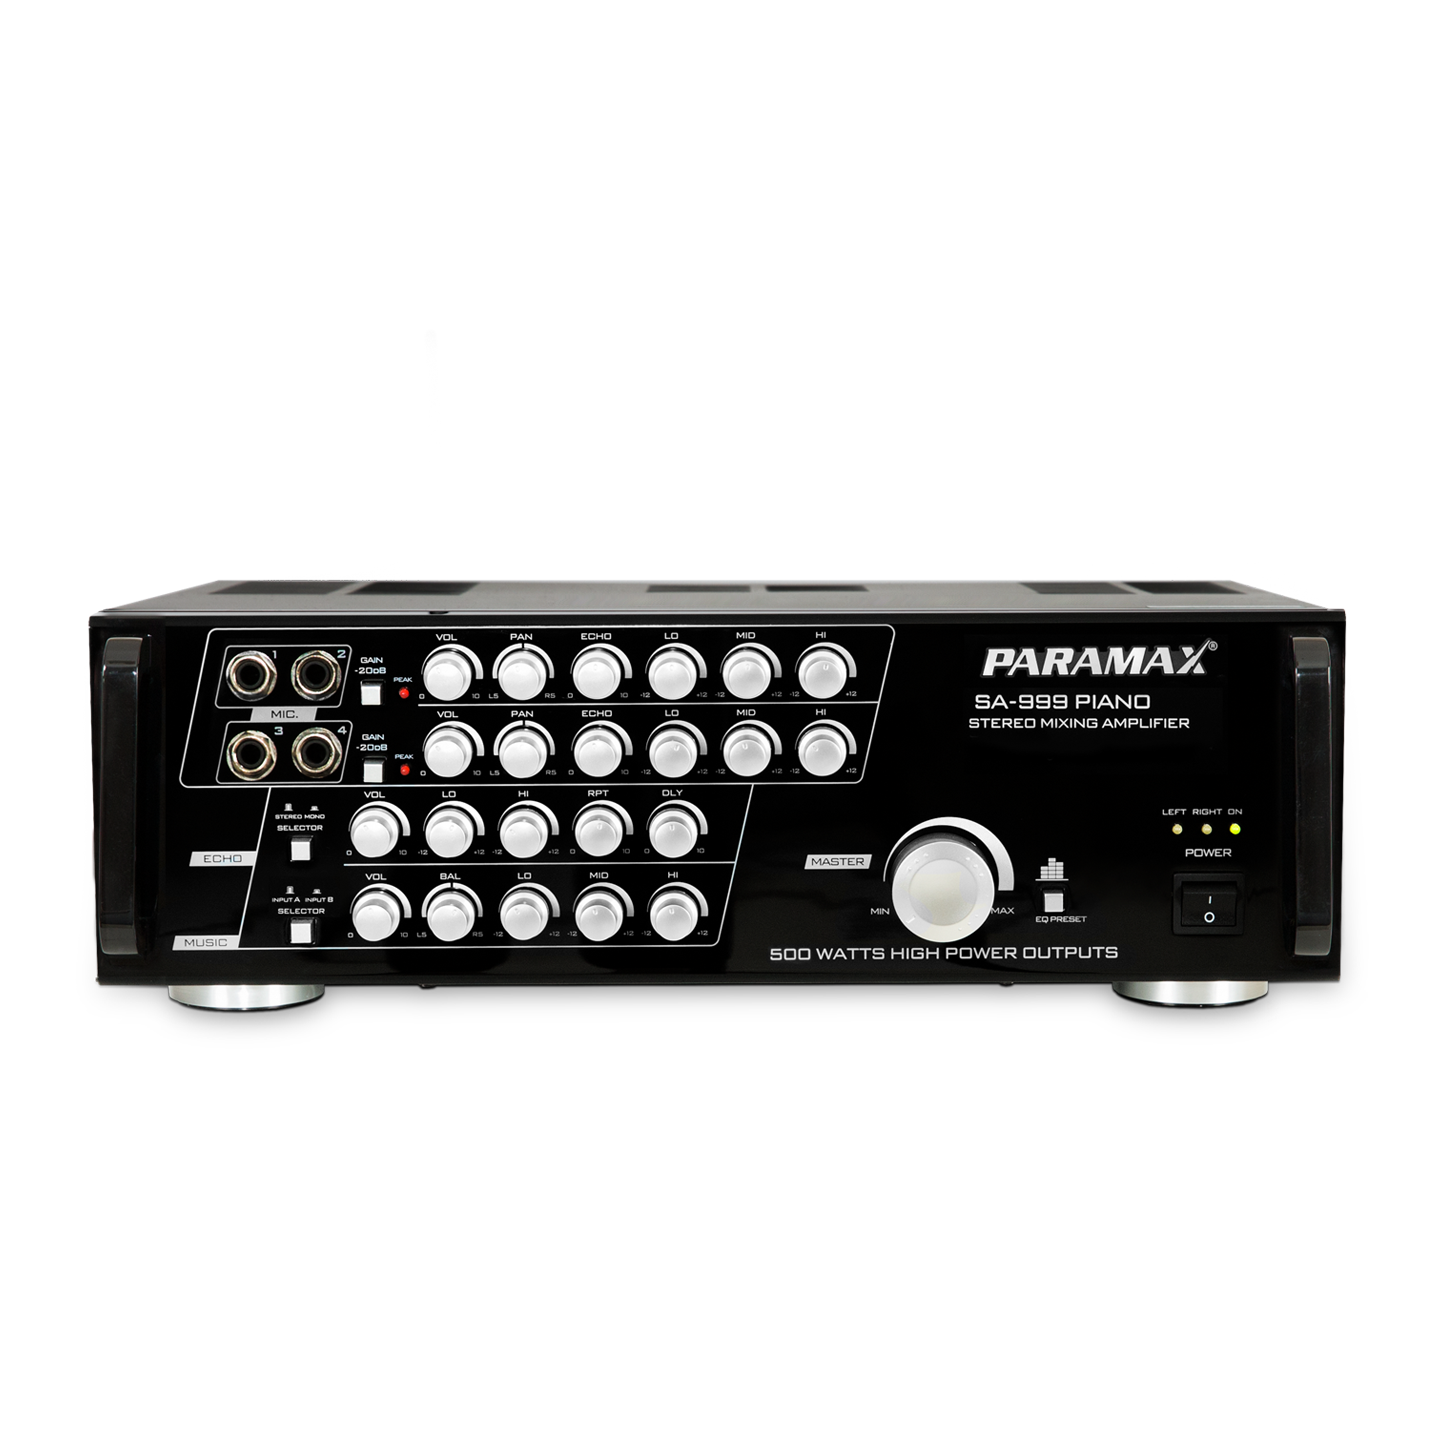 Ampli PARAMAX SA-999 PIANO NEW (Phiên bản mới của SA-999 Piano)